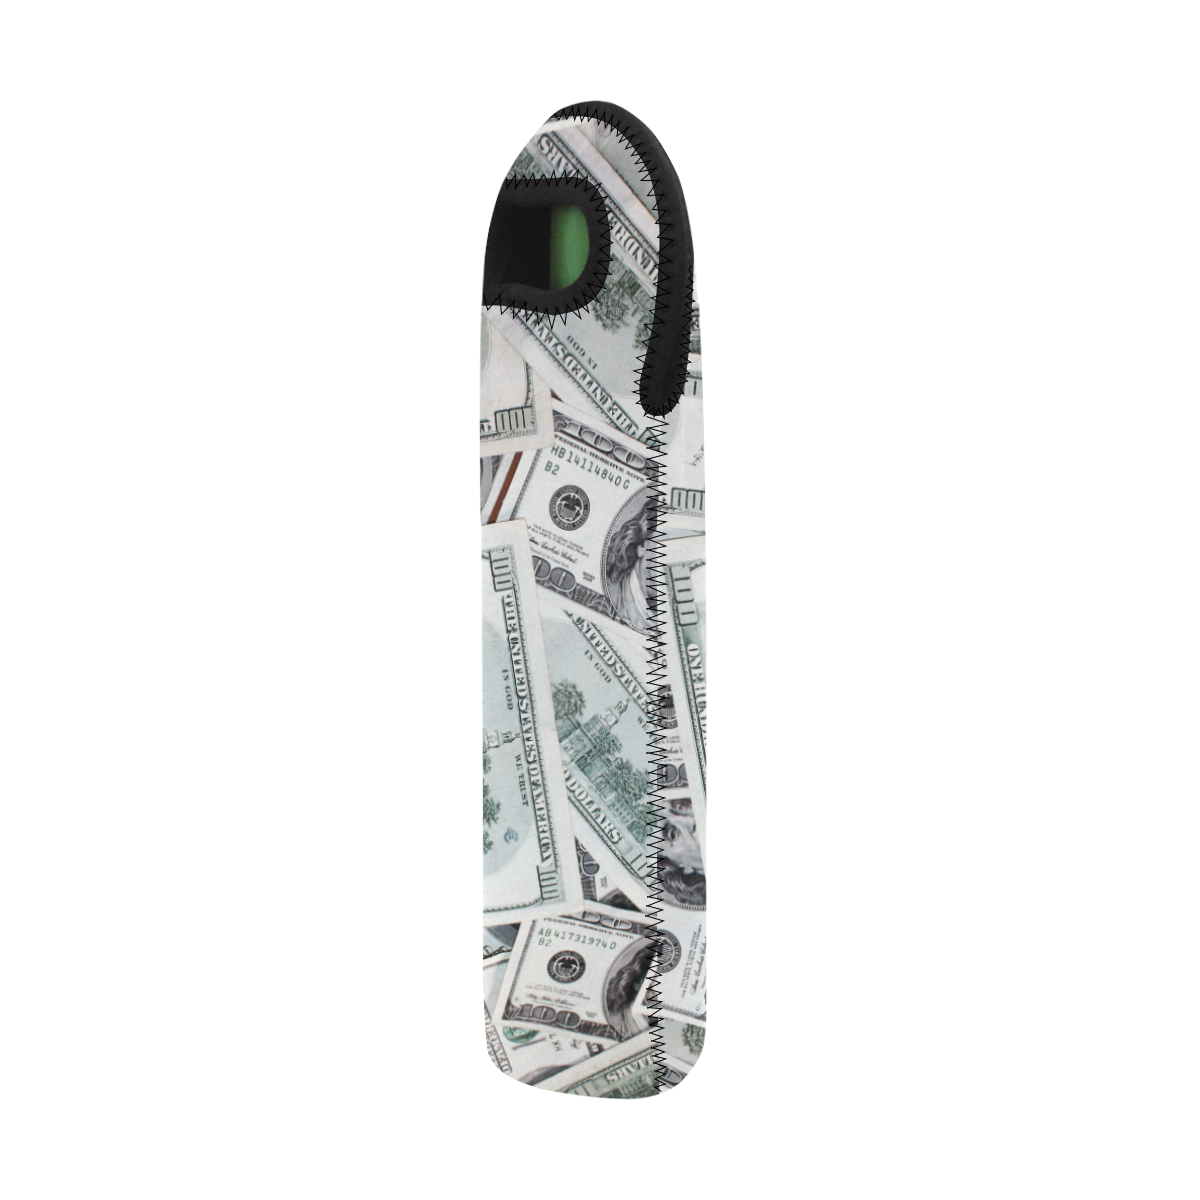 Cash Money / Hundred Dollar Bills Neoprene Wine Bag